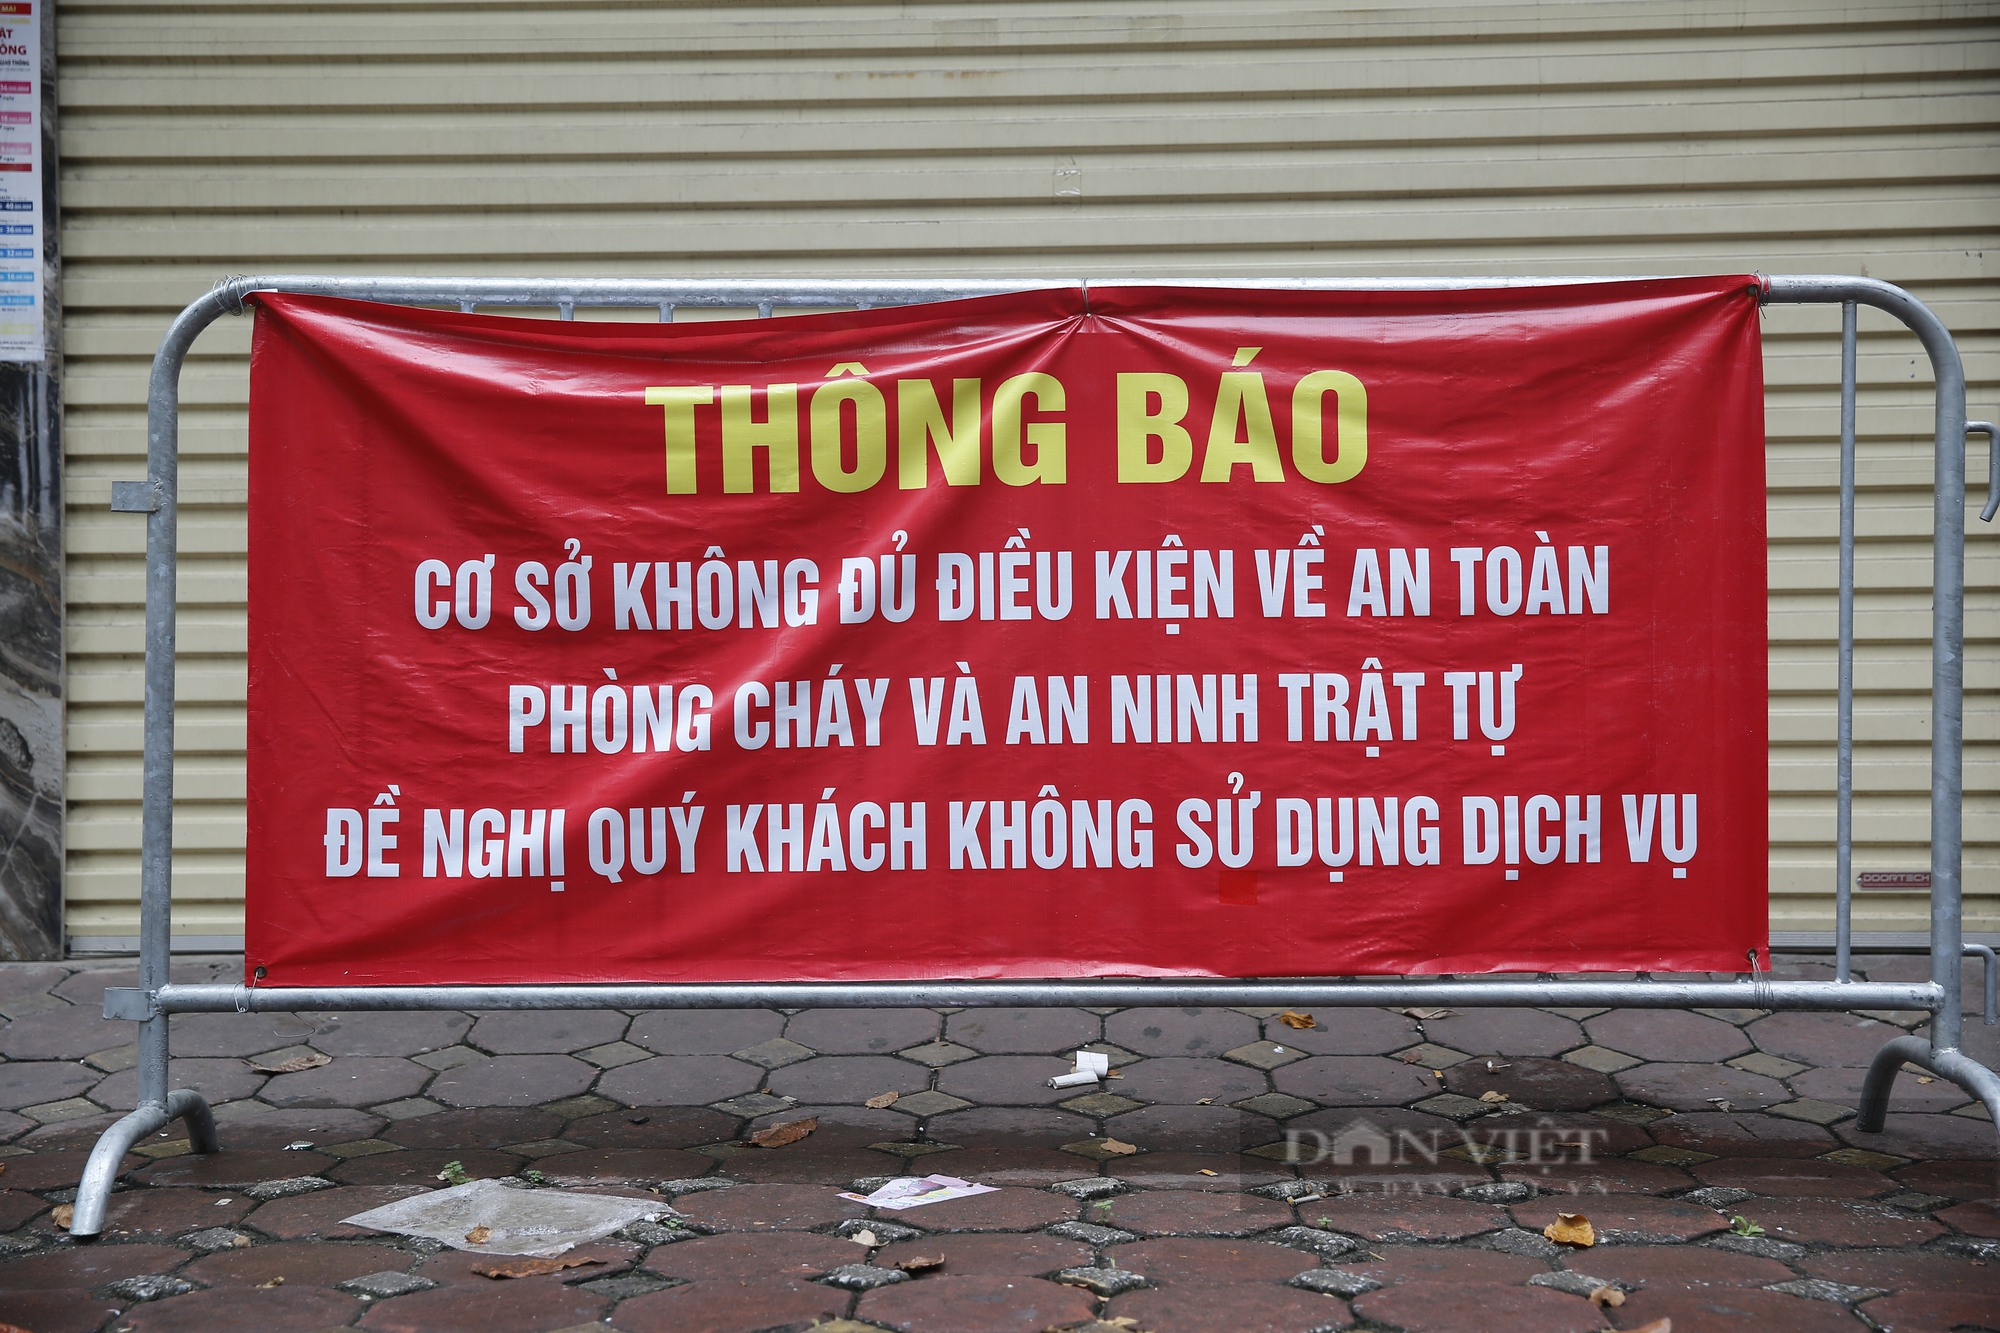 Karaoke vi phạm phòng cháy ở Hà Nội bị rào chắn, dán thông báo để ngăn hoạt động chui - Ảnh 4.